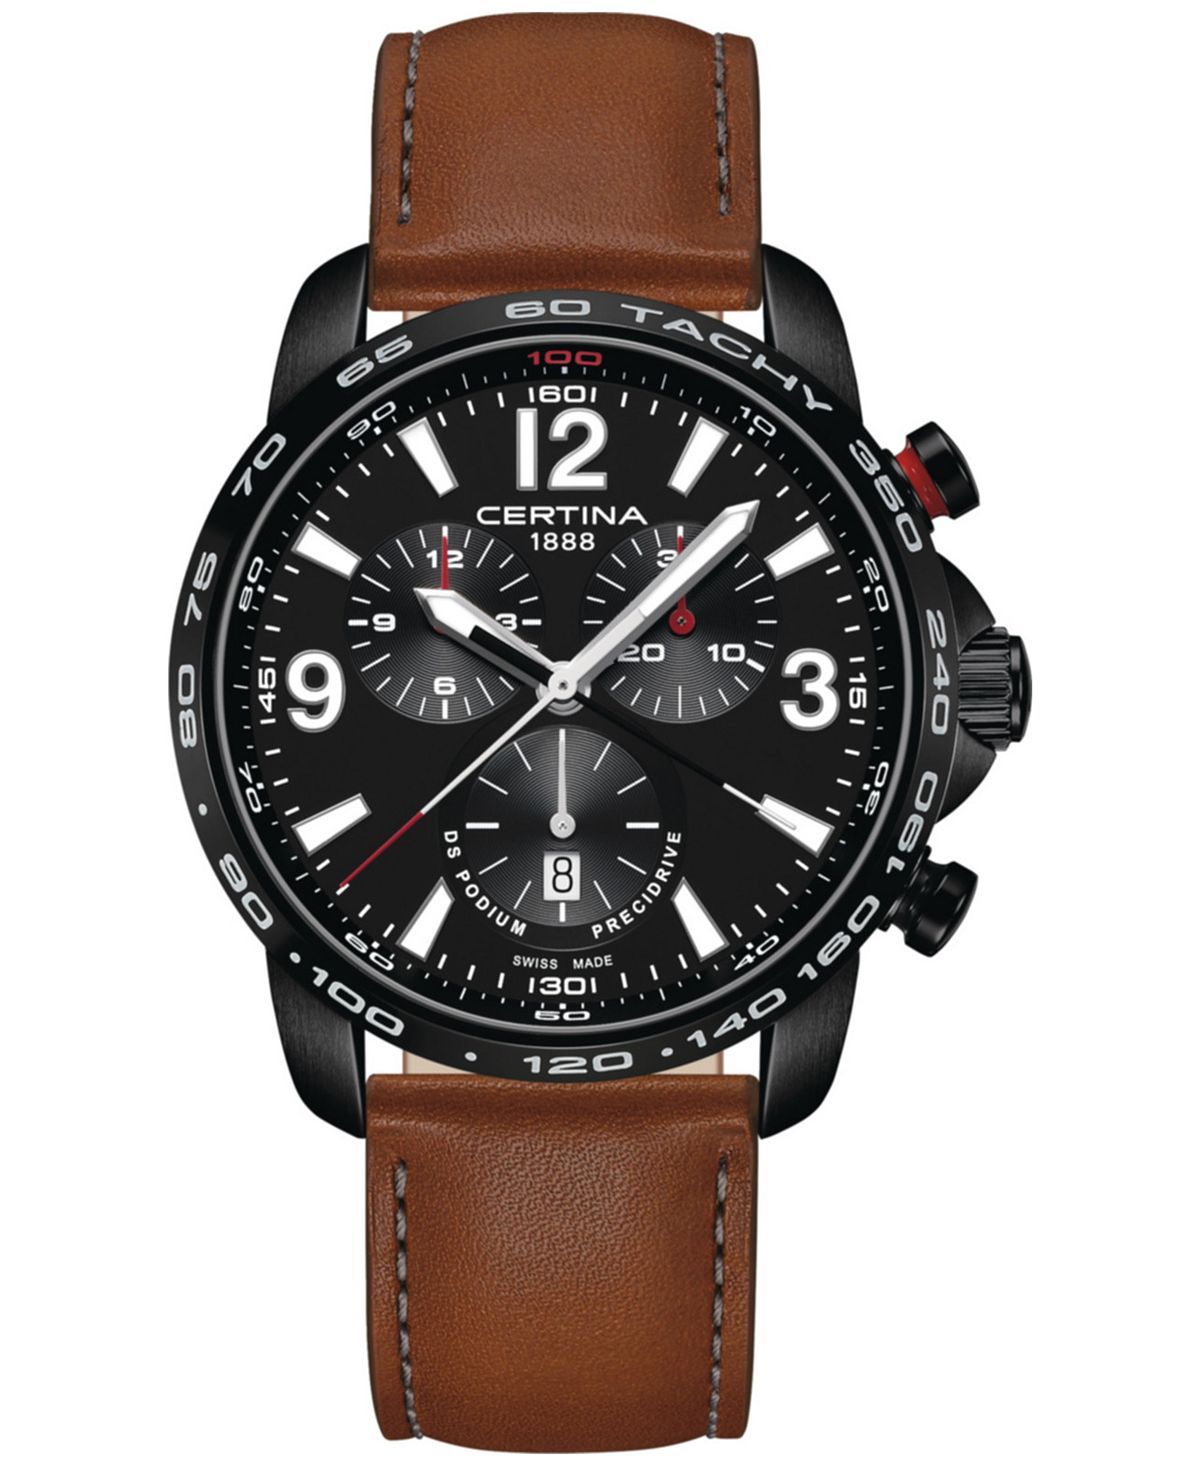 Мужские швейцарские часы с хронографом DS Podium, коричневый кожаный ремешок, 44 мм Certina certina certina ds podium chronograph 1 10 sec c0344171109700